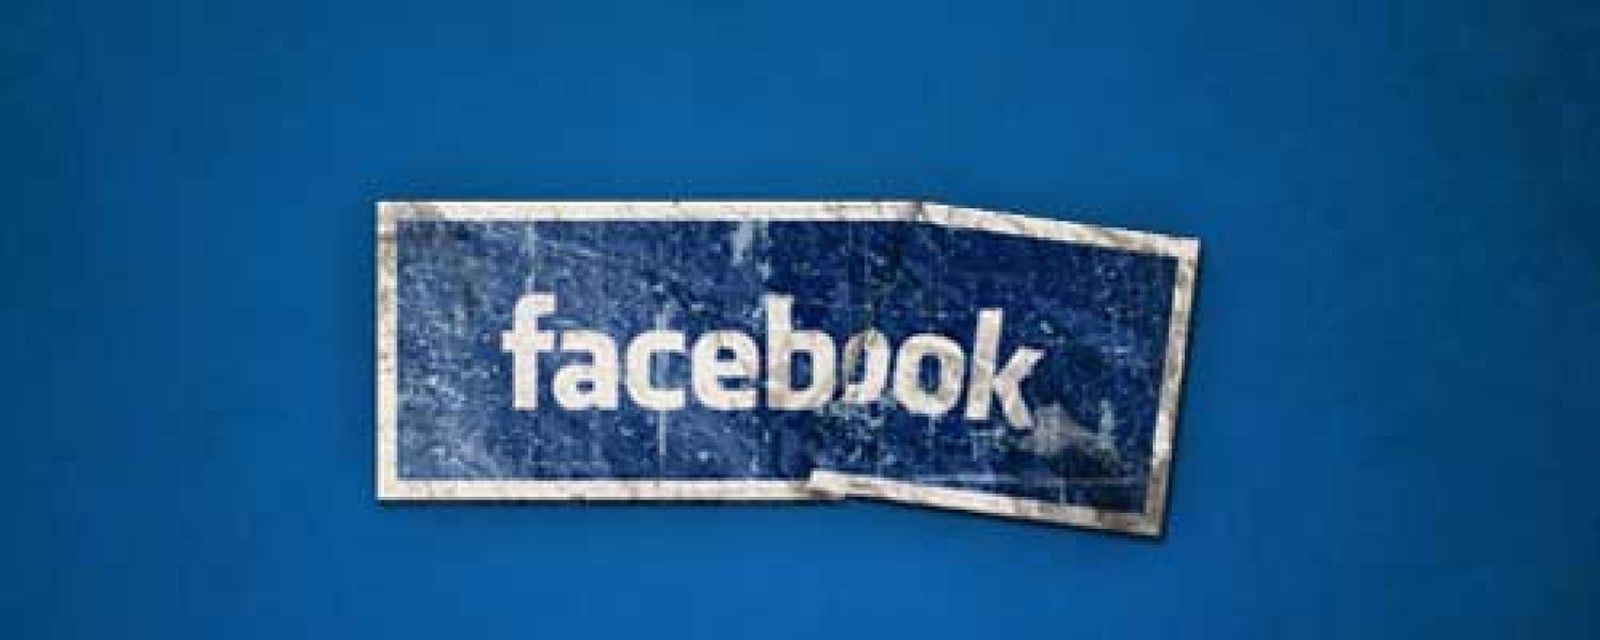 Foto: Fanpages náufragas: el 82% de las páginas corporativas en Facebook no se actualizan